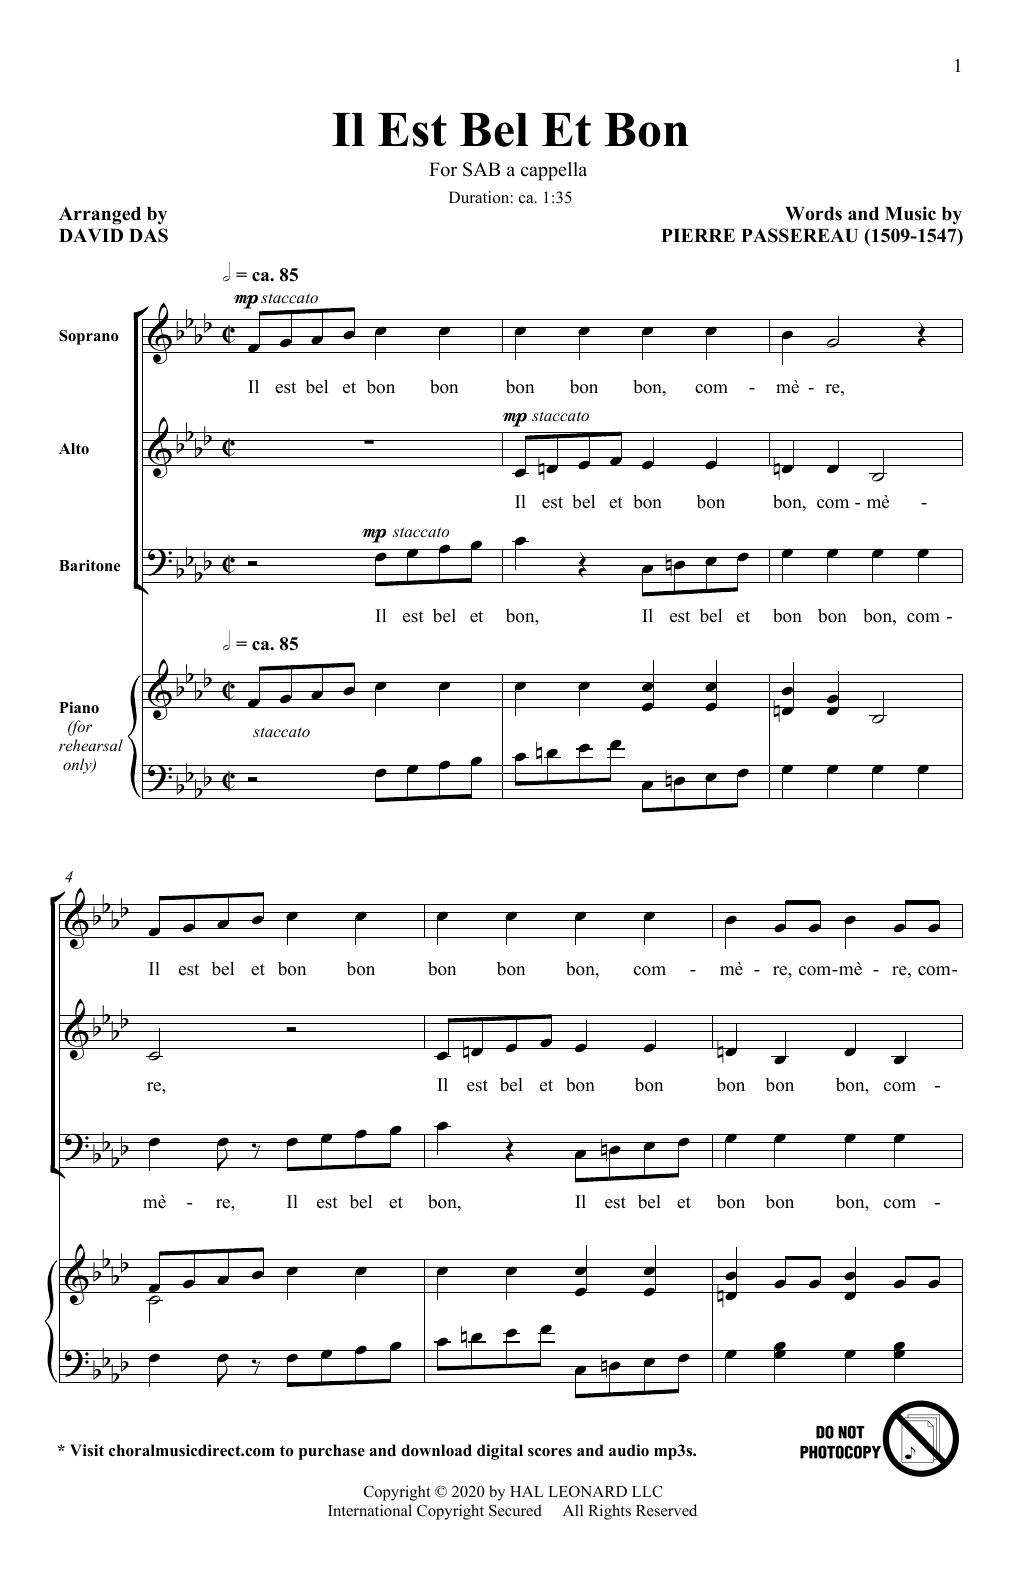 Pierre Passereau Il Est Bel Et Bon (arr. David Das) sheet music notes and chords arranged for SAB Choir